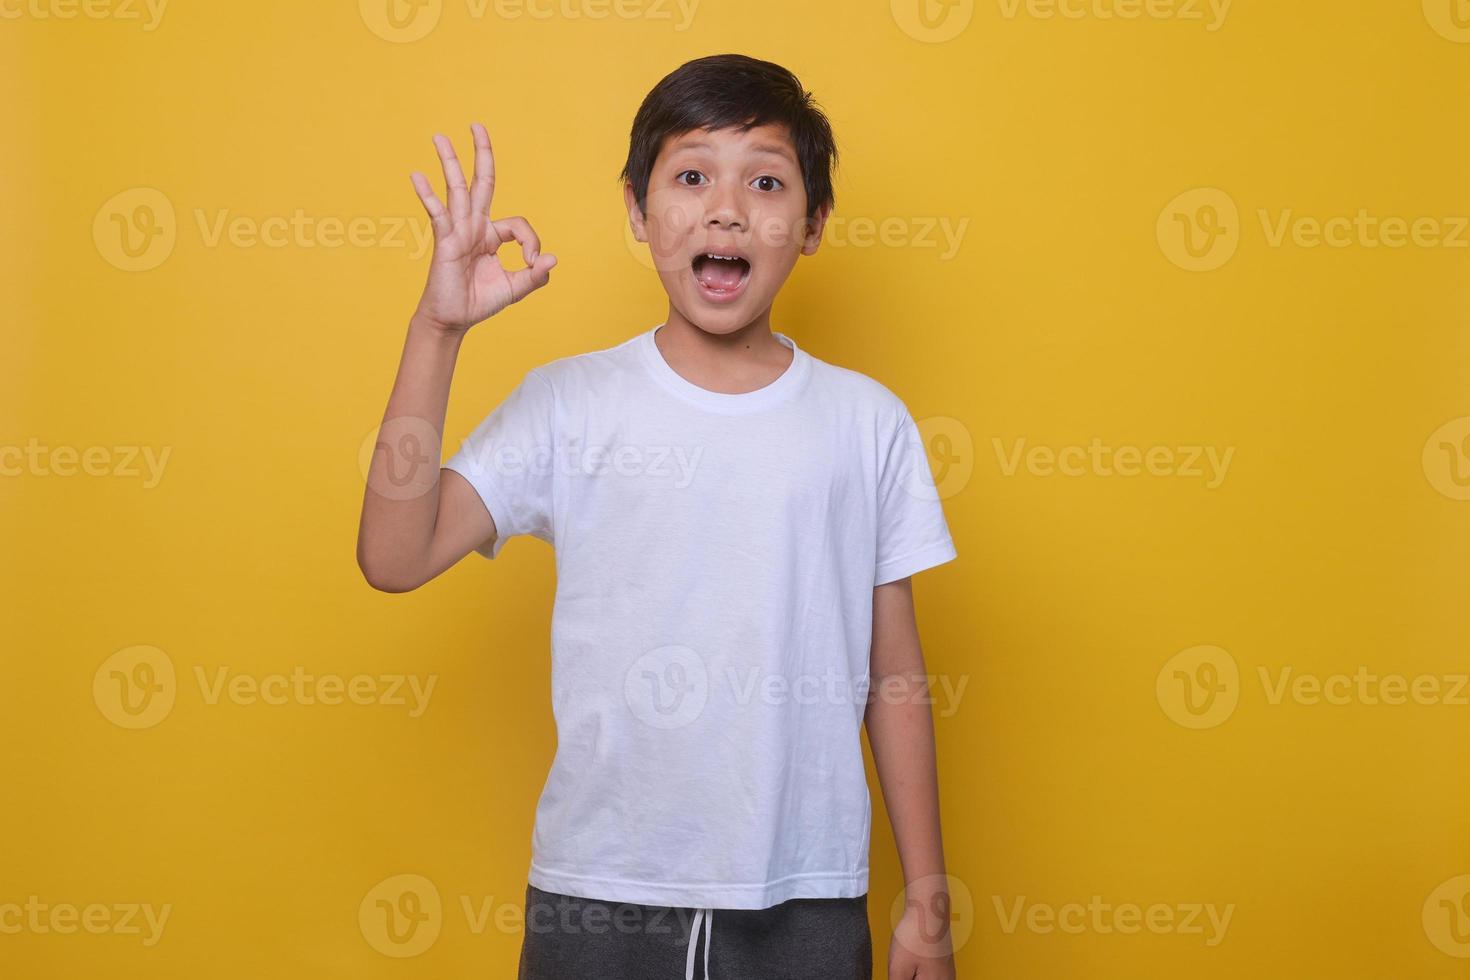 garçon asiatique dans un style décontracté montrant le signe ok sur fond jaune. le concept de réussite, d'approbation. maquette pour la mode enfantine. photo